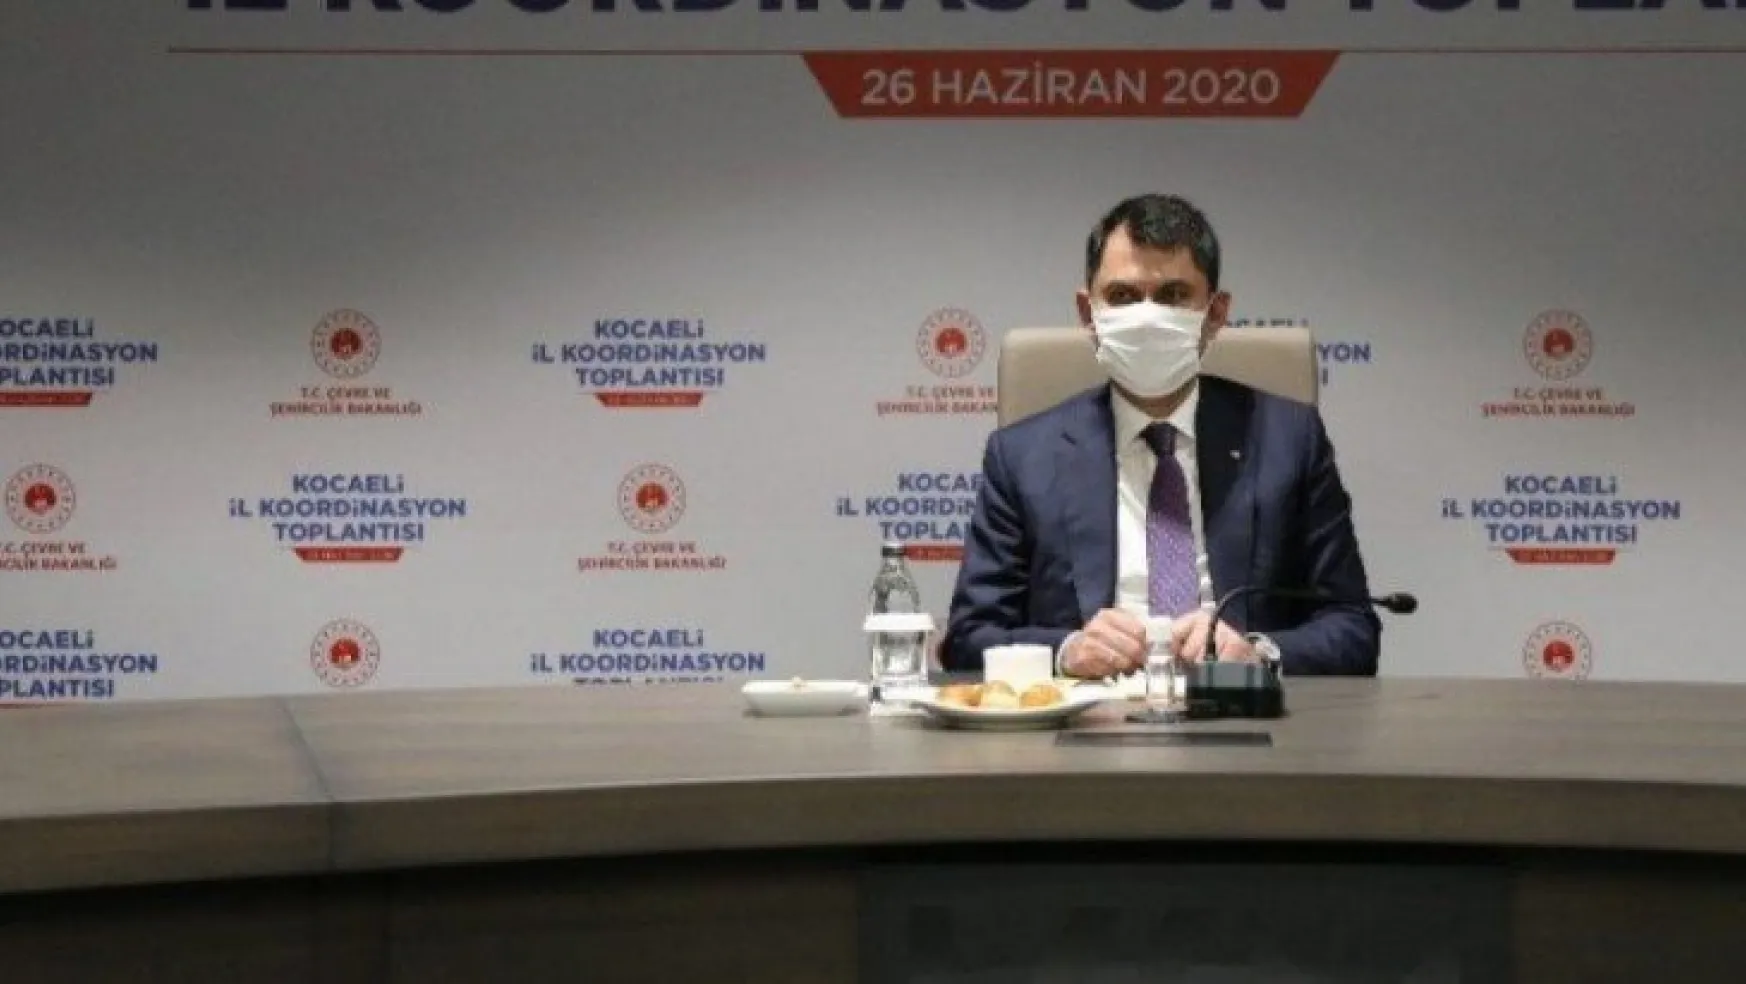 Çevre ve Şehircilik Bakanı Murat Kurum Kocaeli'de konuştu